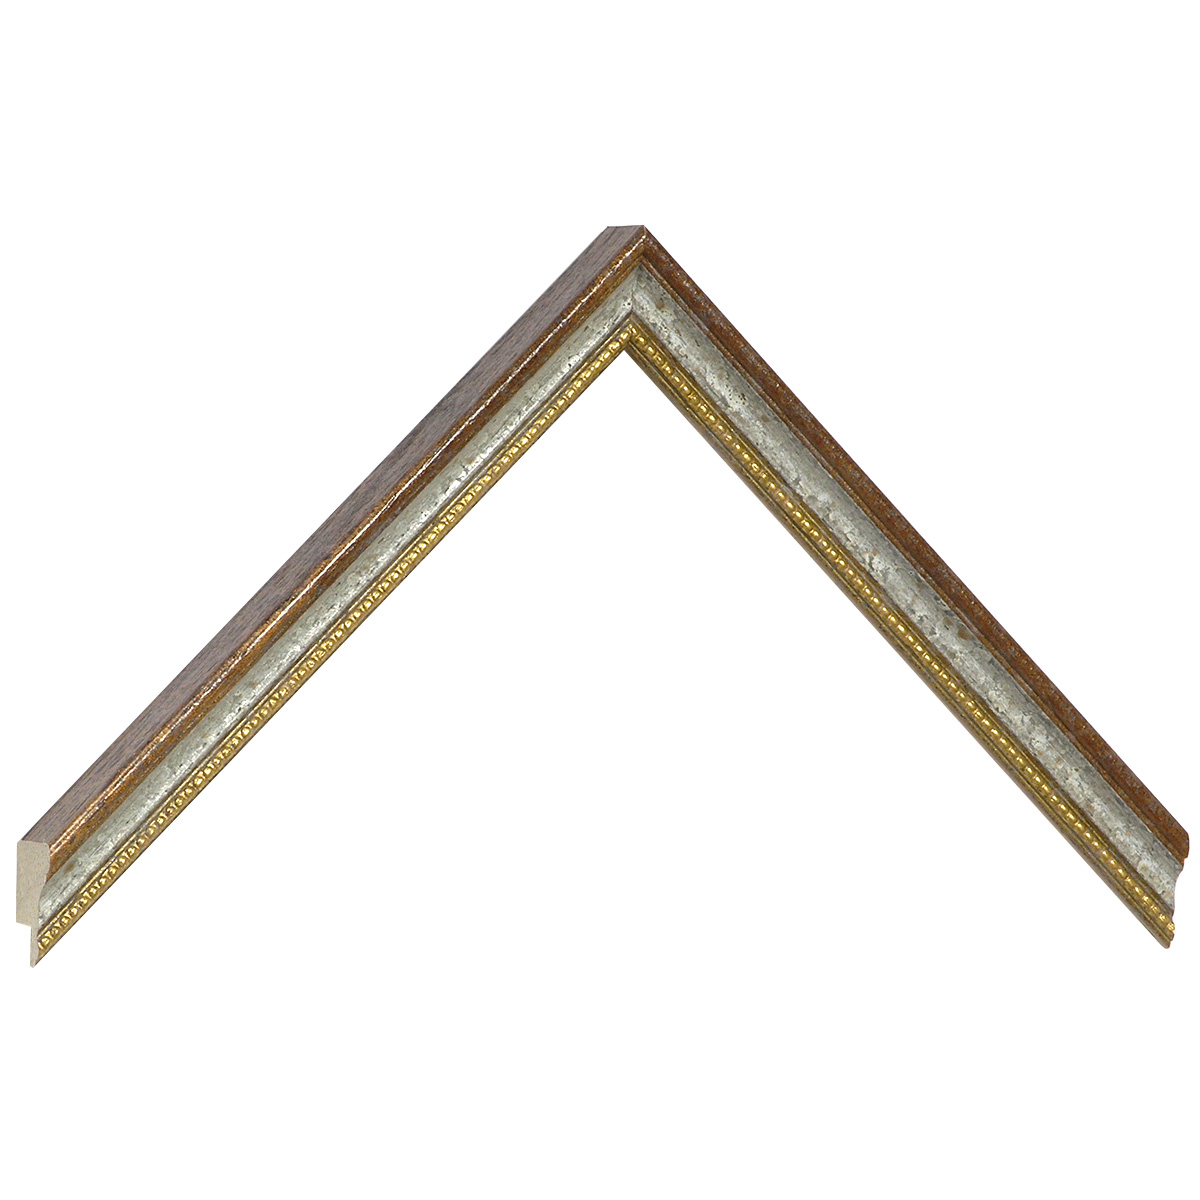 Profil ayous  Lăț.15 mm Înălț.18 - maro, canelură albă, fir auriu - Mostră